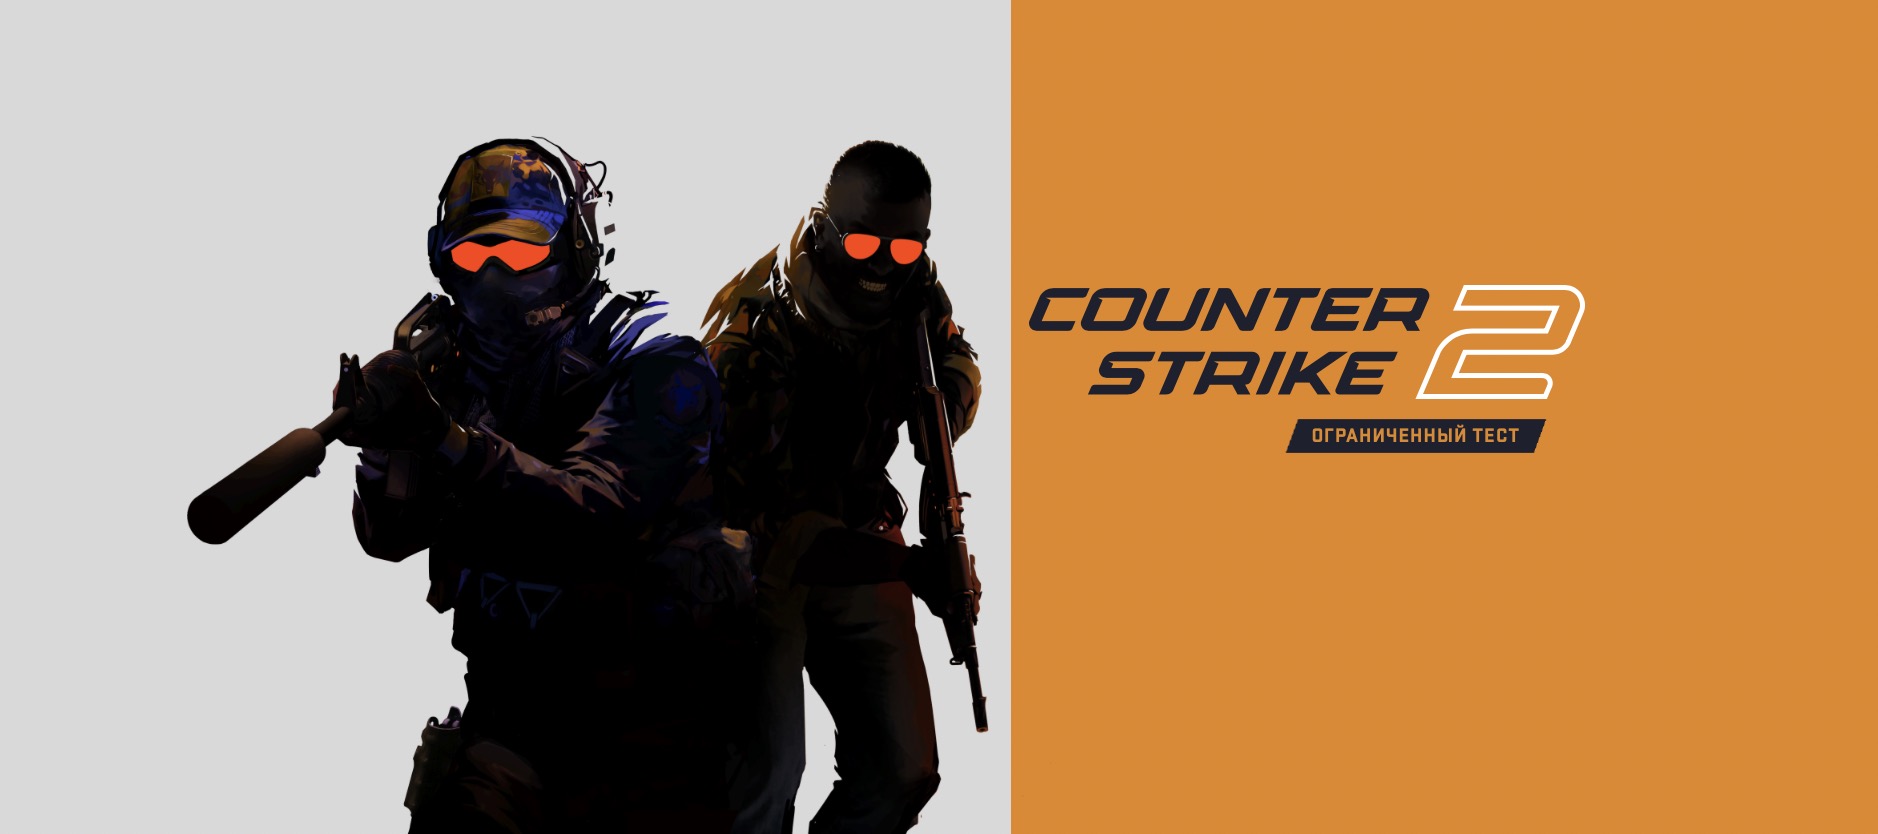 Counter-Strike 2 на новом движке с нереальной графикой представлен официально. Зацените сами, как похорошела культовая игра